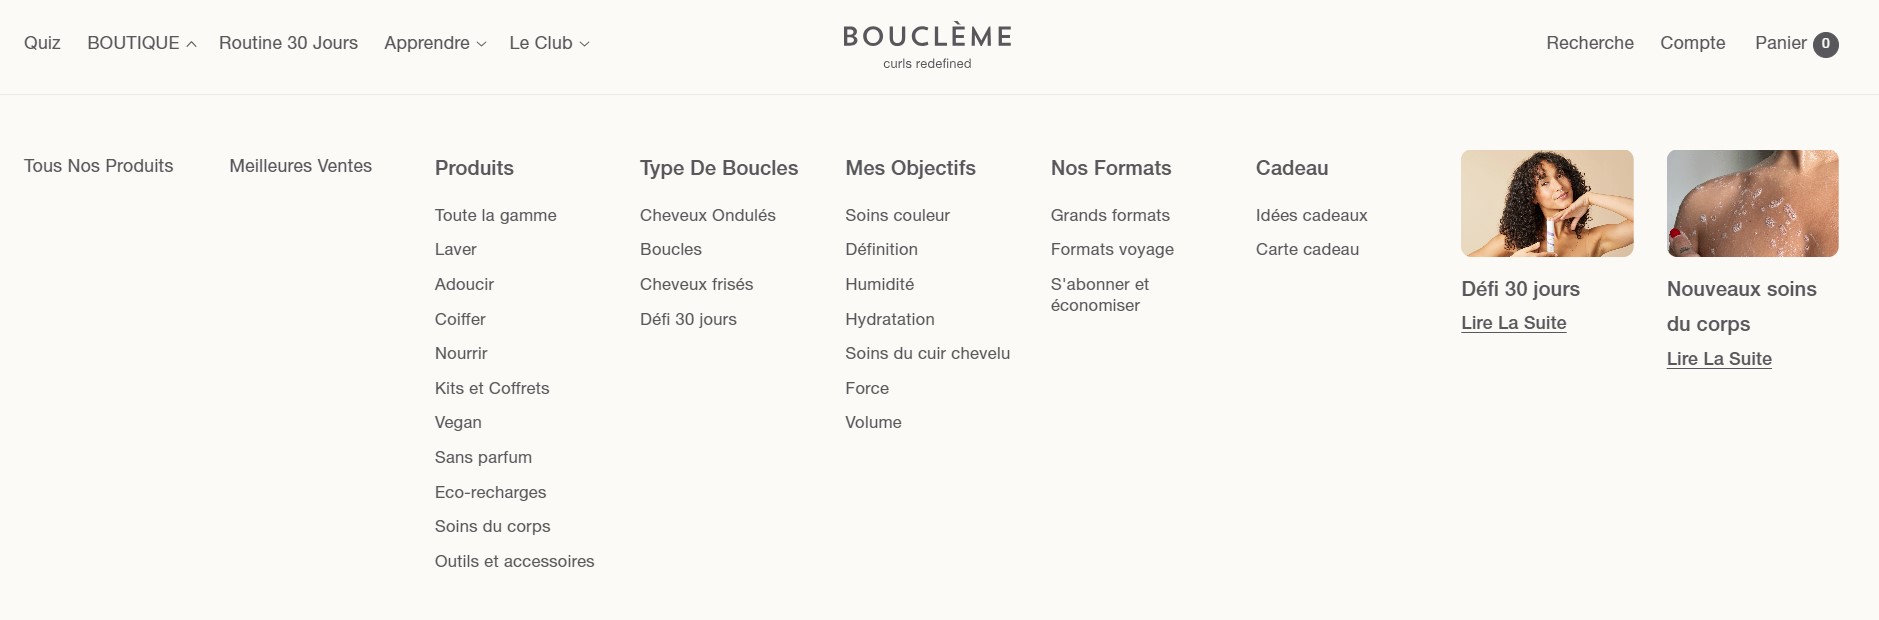 Capture d'écran pour montrer le menu de Boucleme